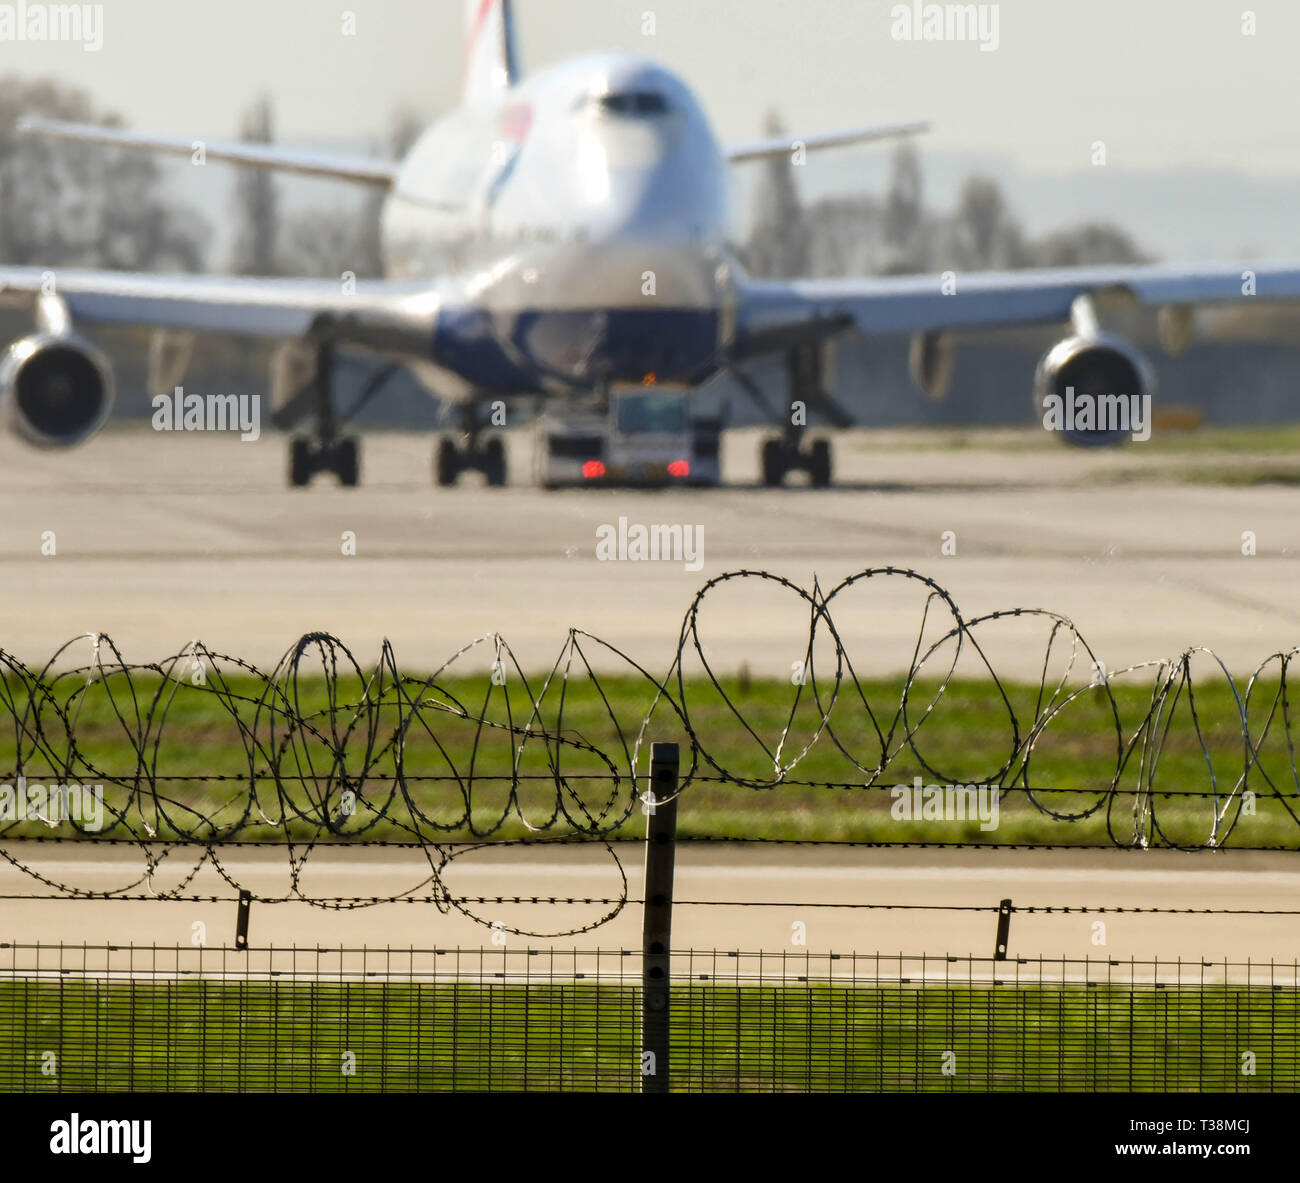 Londres, Inglaterra - Marzo 2019: barrera de seguridad de alambre de espino alrededor del perímetro del aeropuerto de Londres Heathrow. Un avión está en el fondo Foto de stock